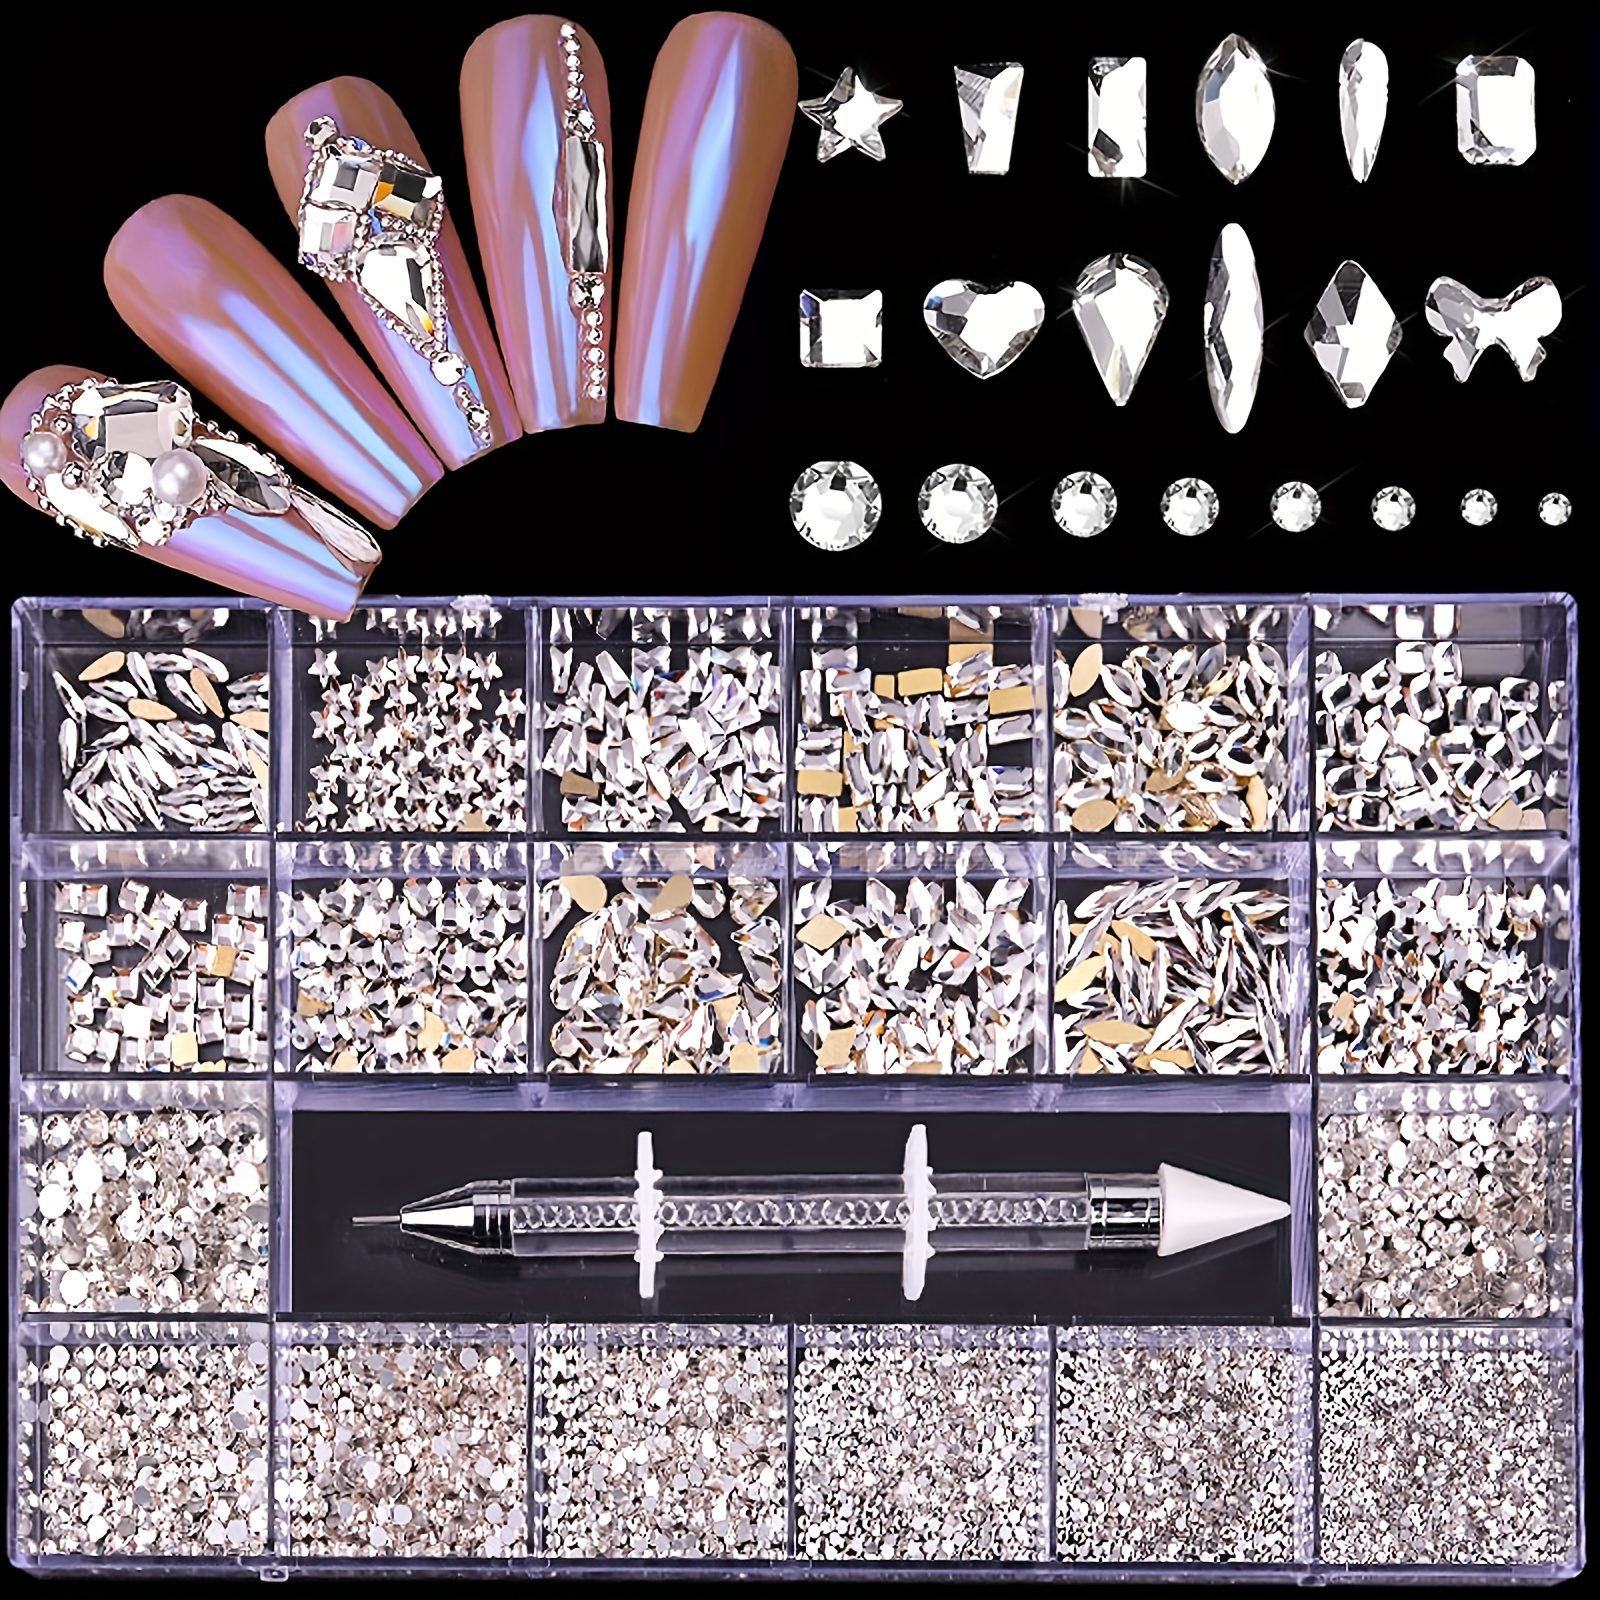 

21grid, Flat Back Nail Art Rhinestones For Diy Or Nail Salon, Mixed Shaped Crystal Nail Art Gemstones Set With Drill Pen